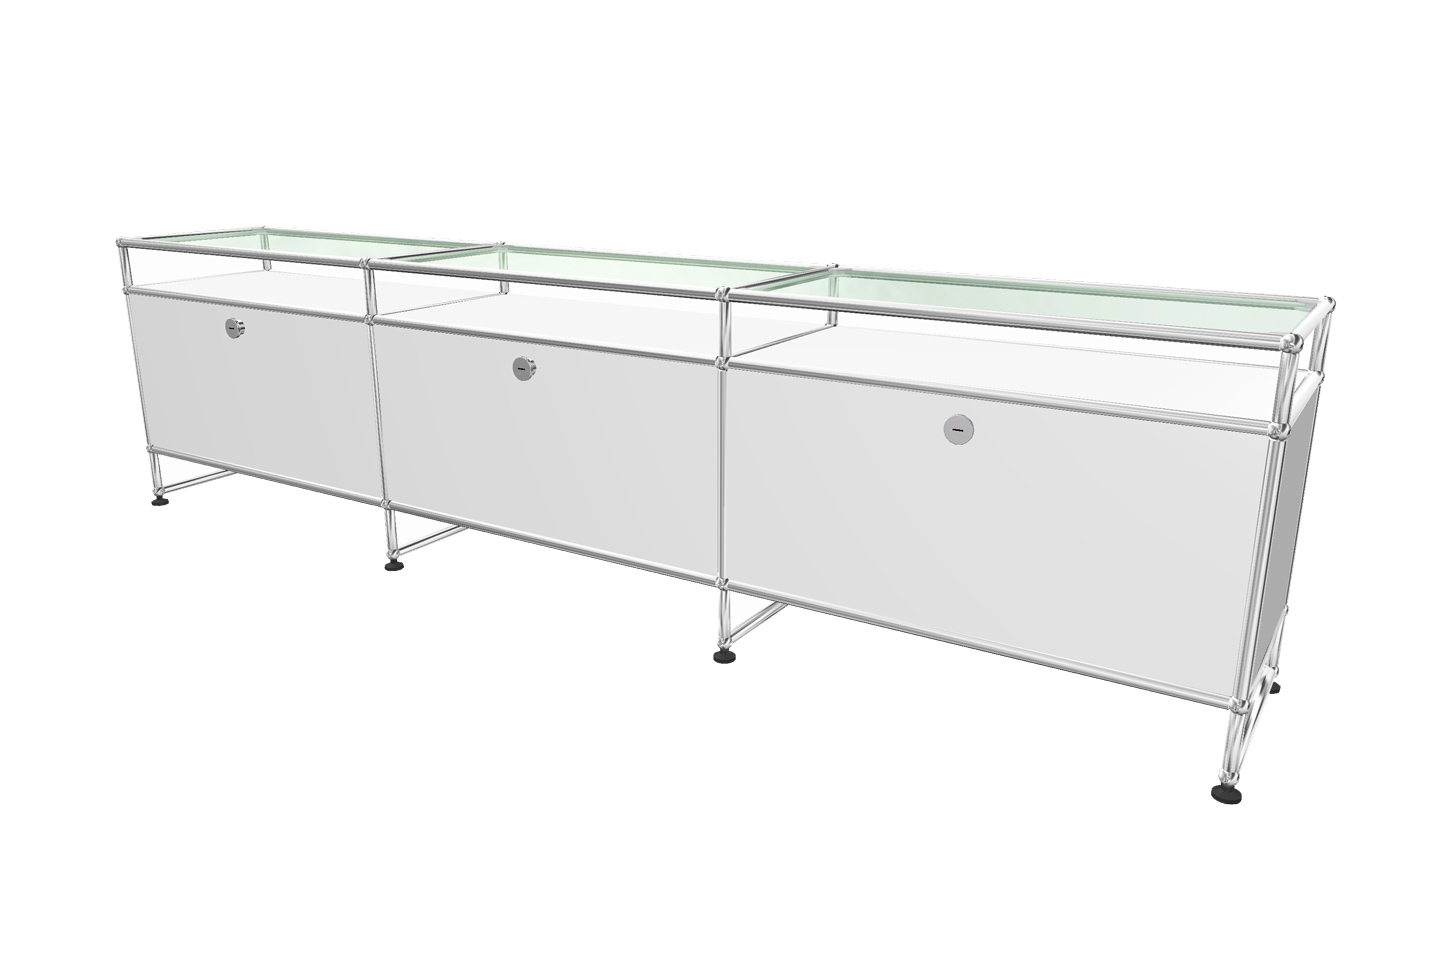 USM Haller sideboard with glass shelves